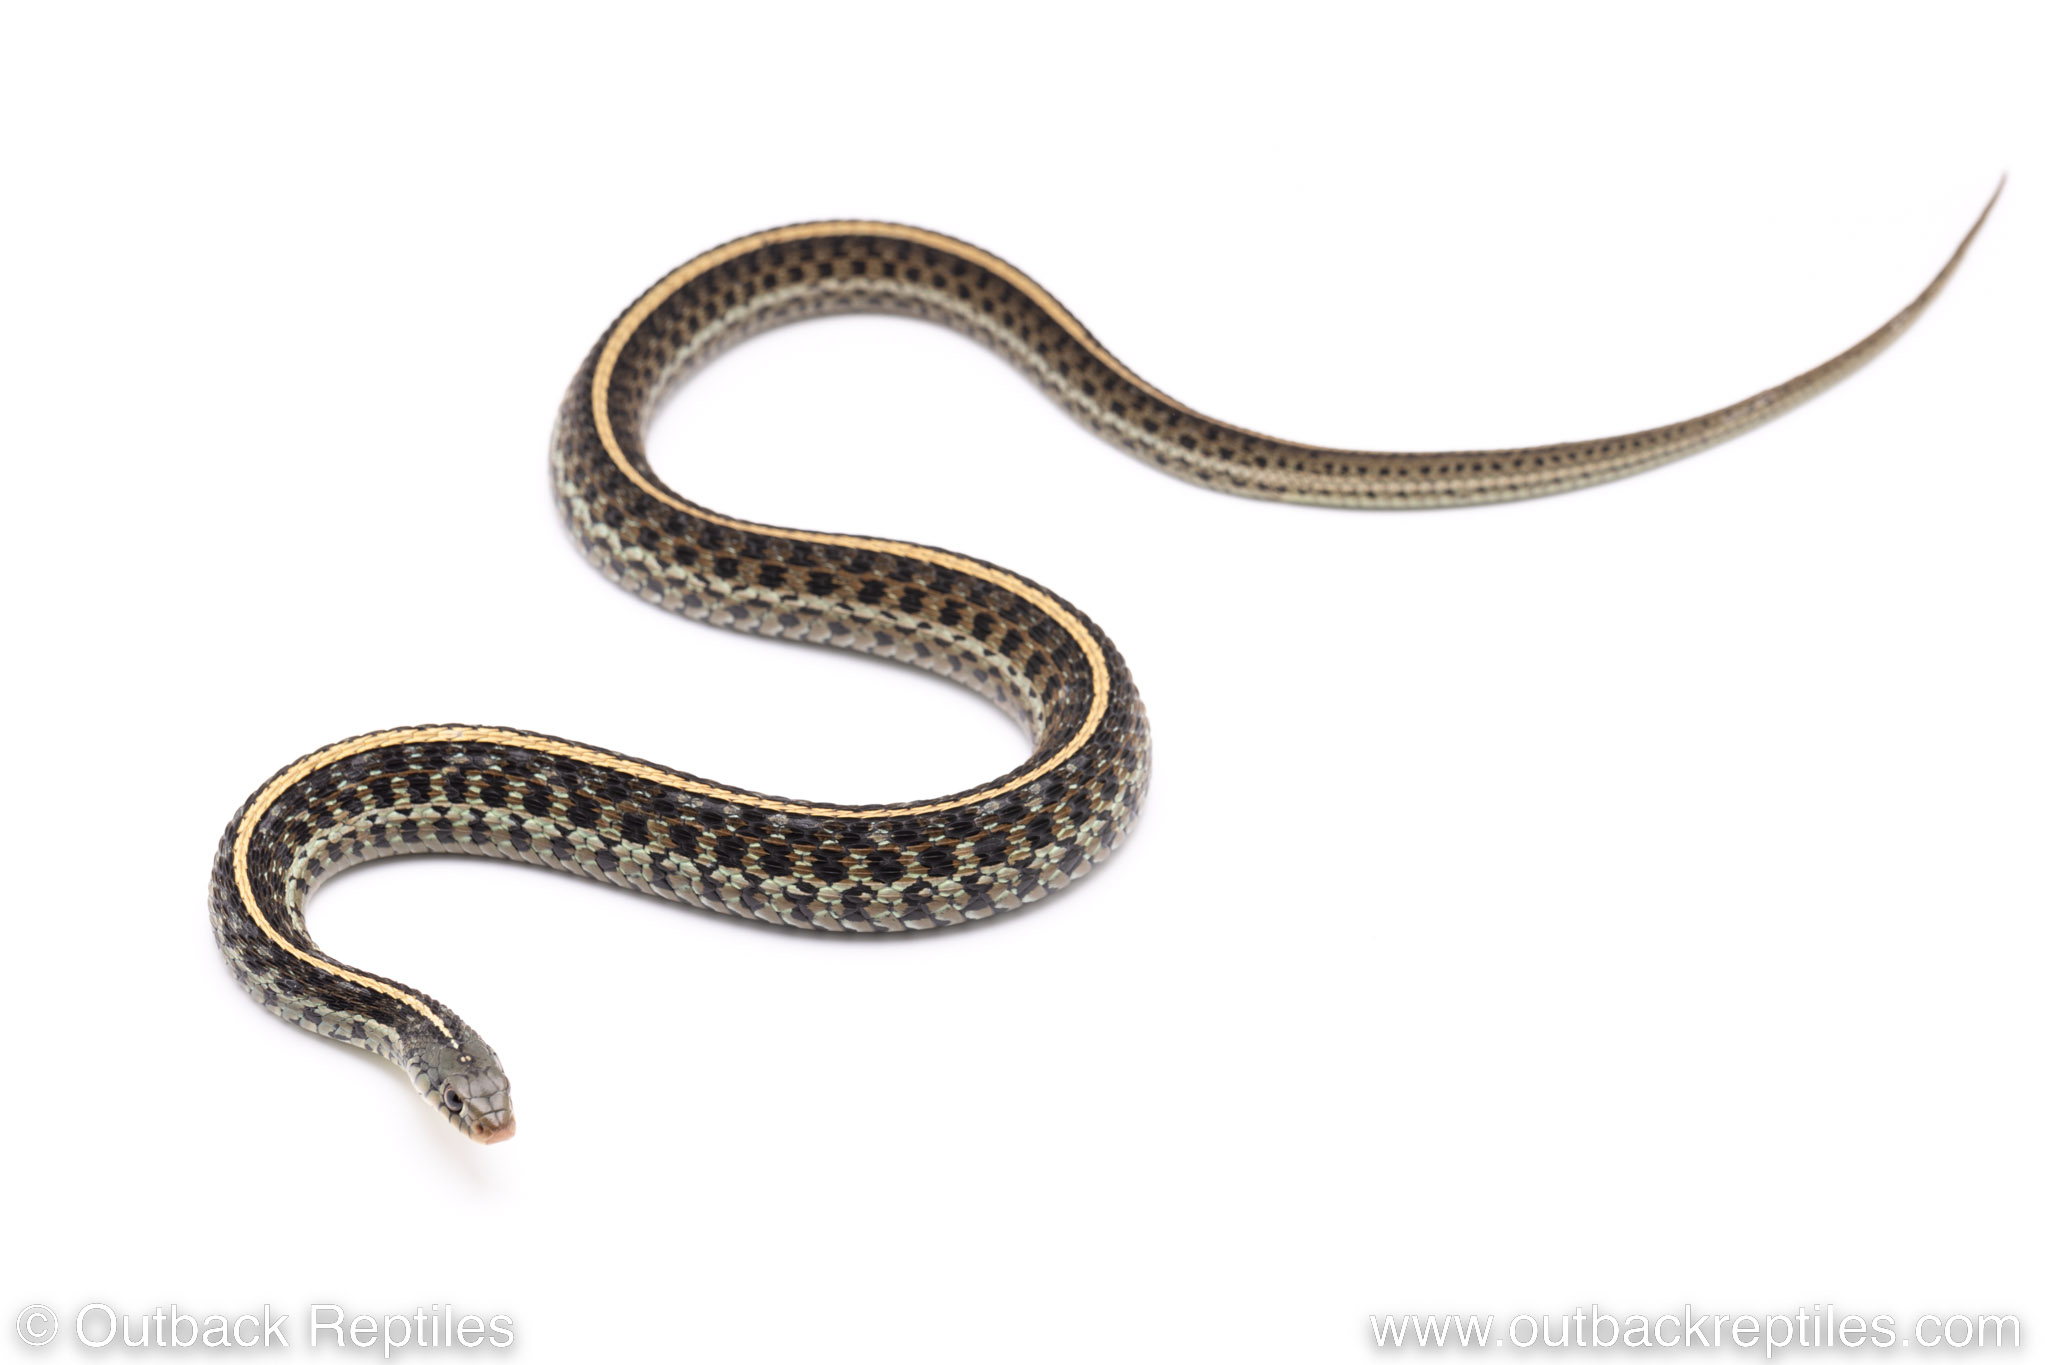 blue eastern garter snake